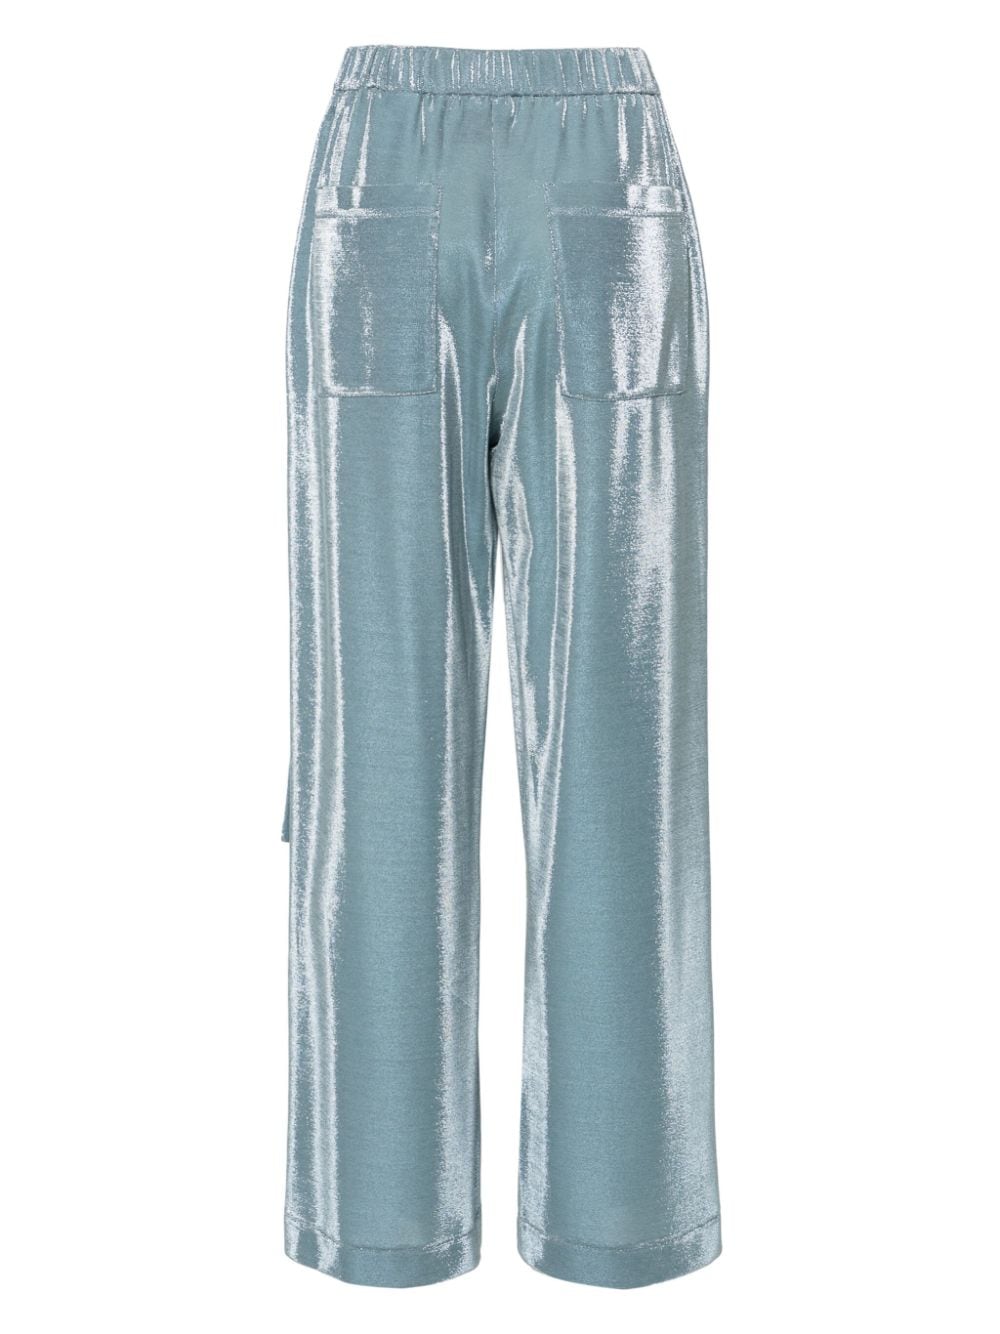 Pantalon femme bleu métallisé